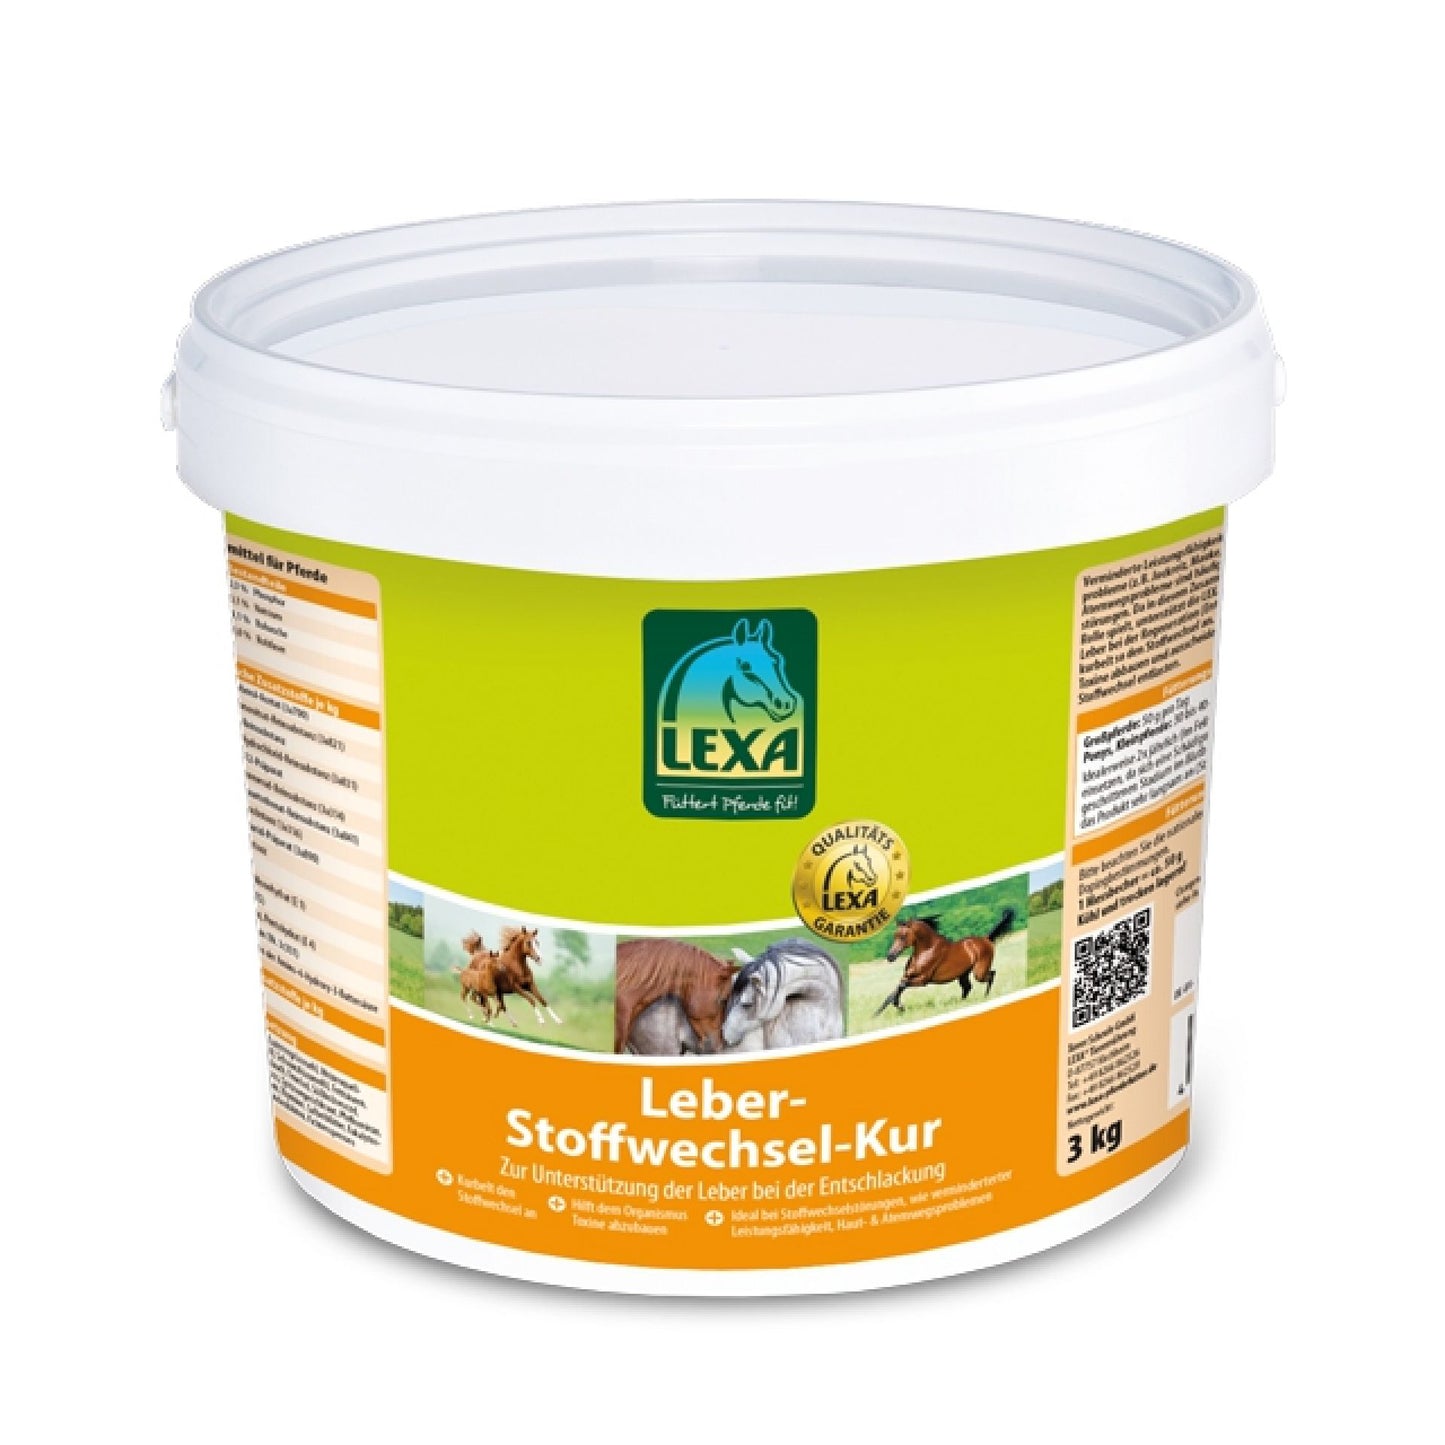 Leber-Stoffwechsel-Kur 3kg